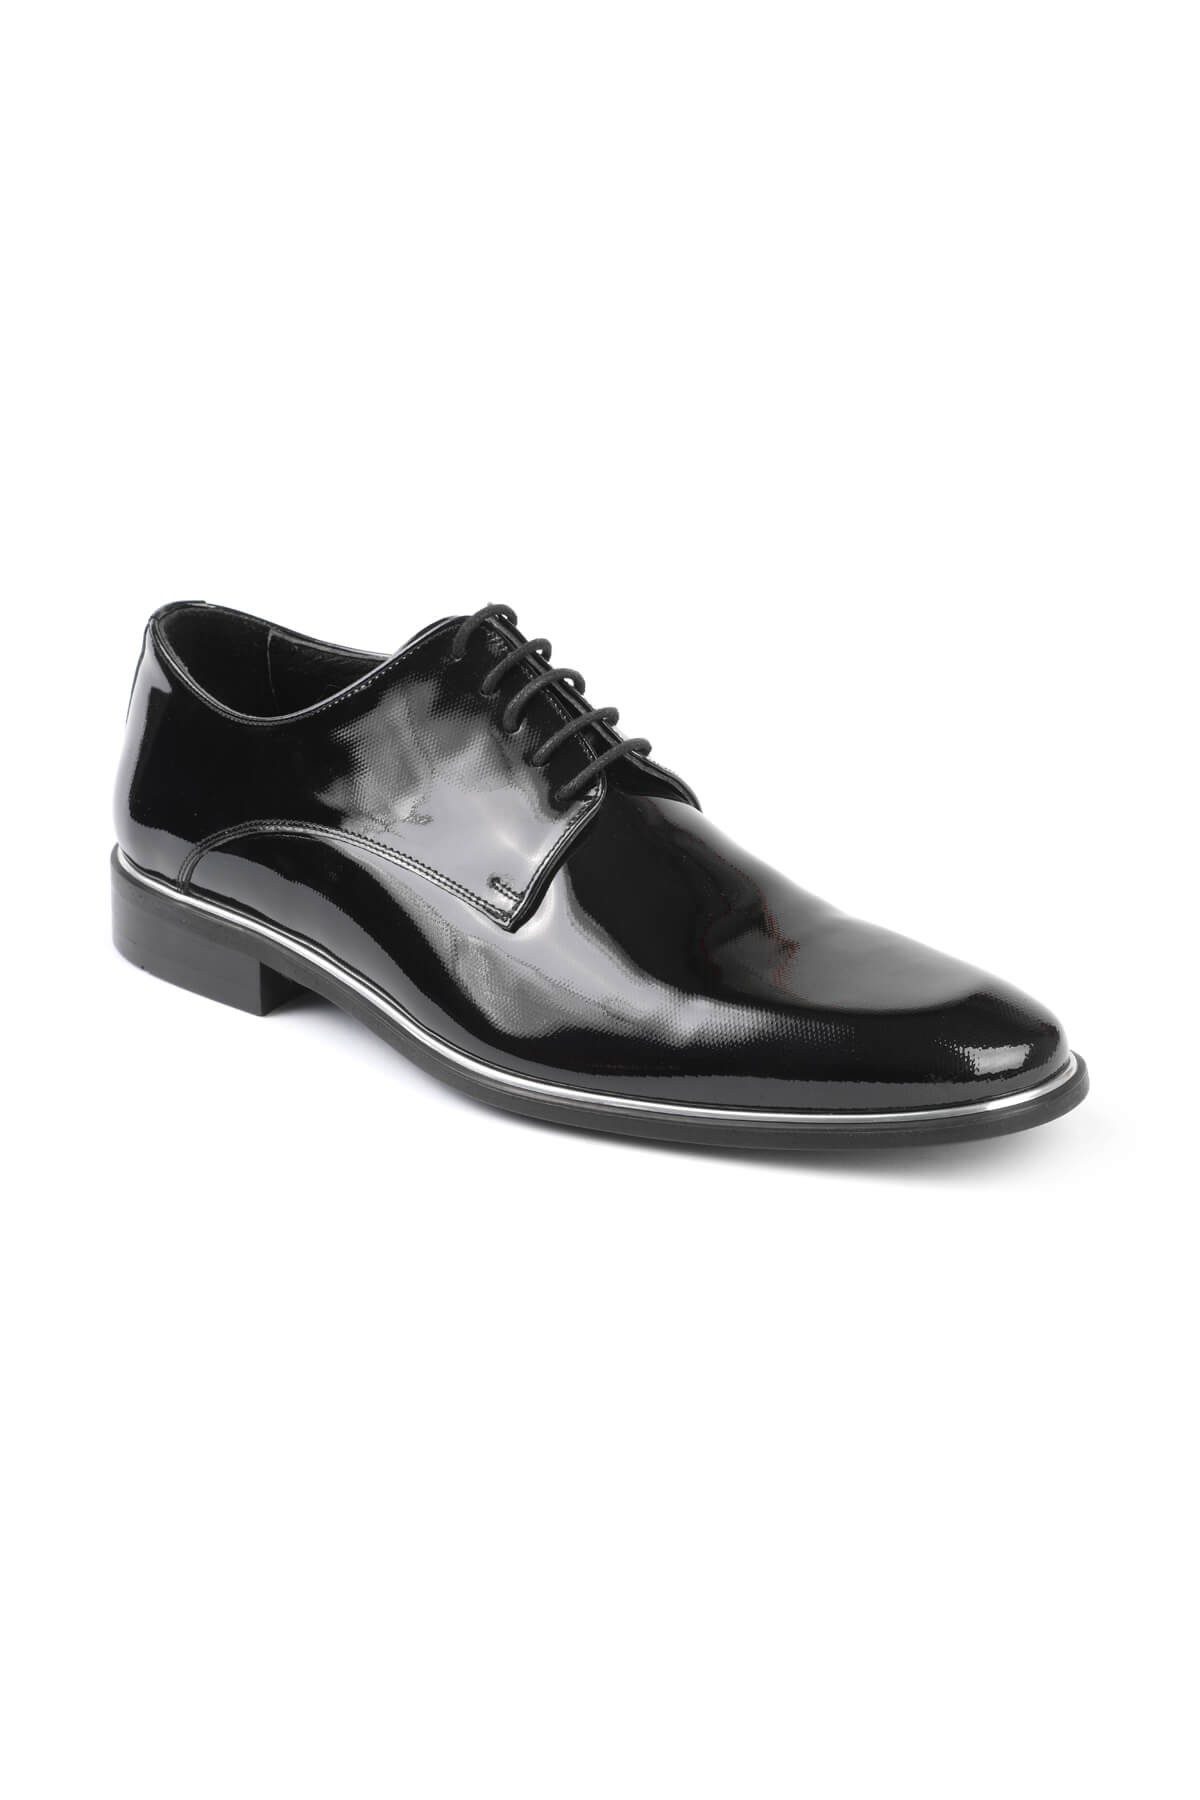 Libero 2140 Klasik Erkek Ayakkabı - SIYAH